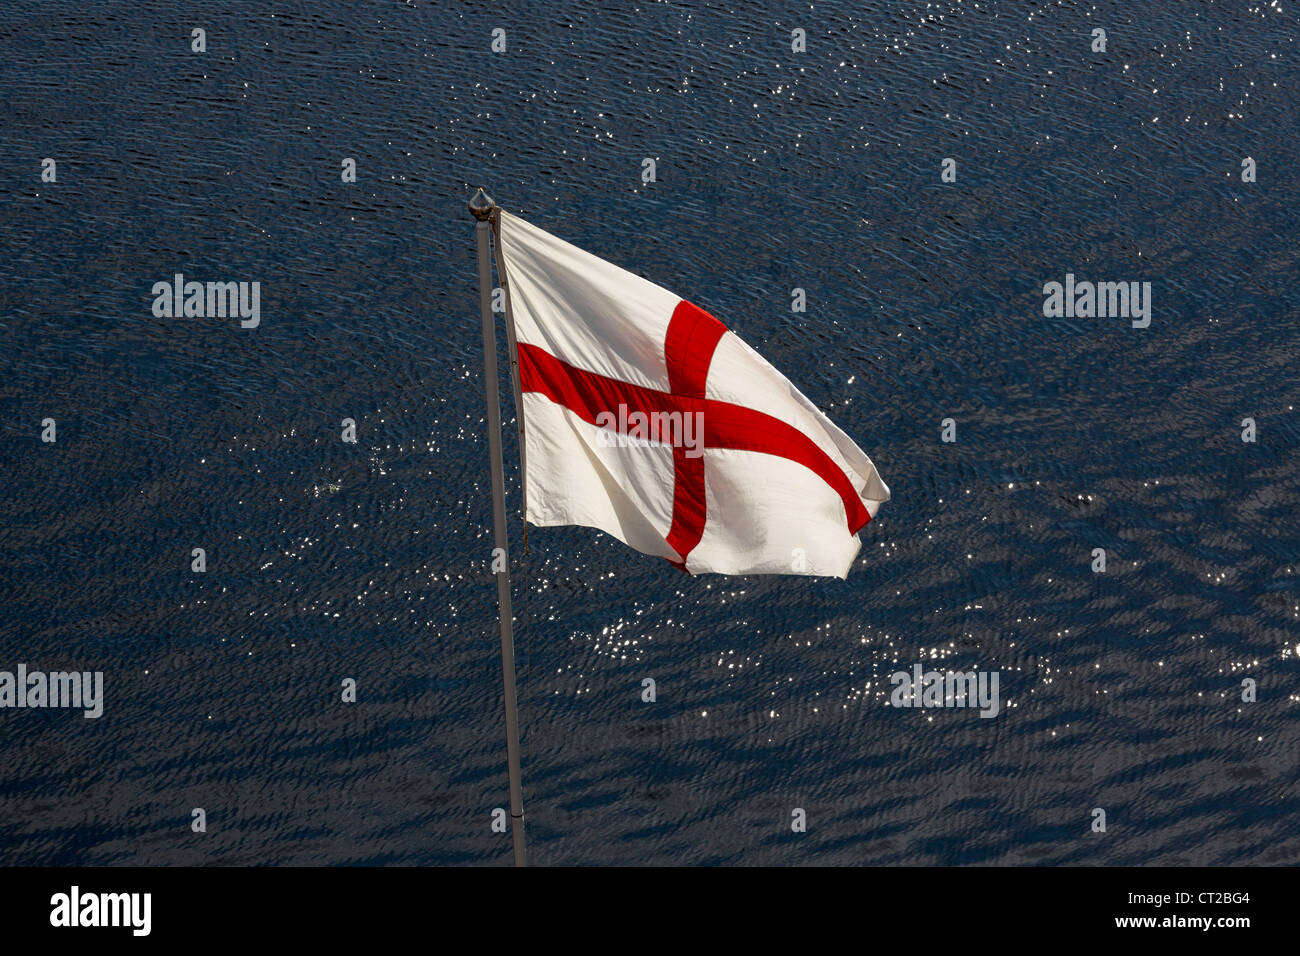 das Kreuz von St. George, die nationale Flagge von England Stockfoto